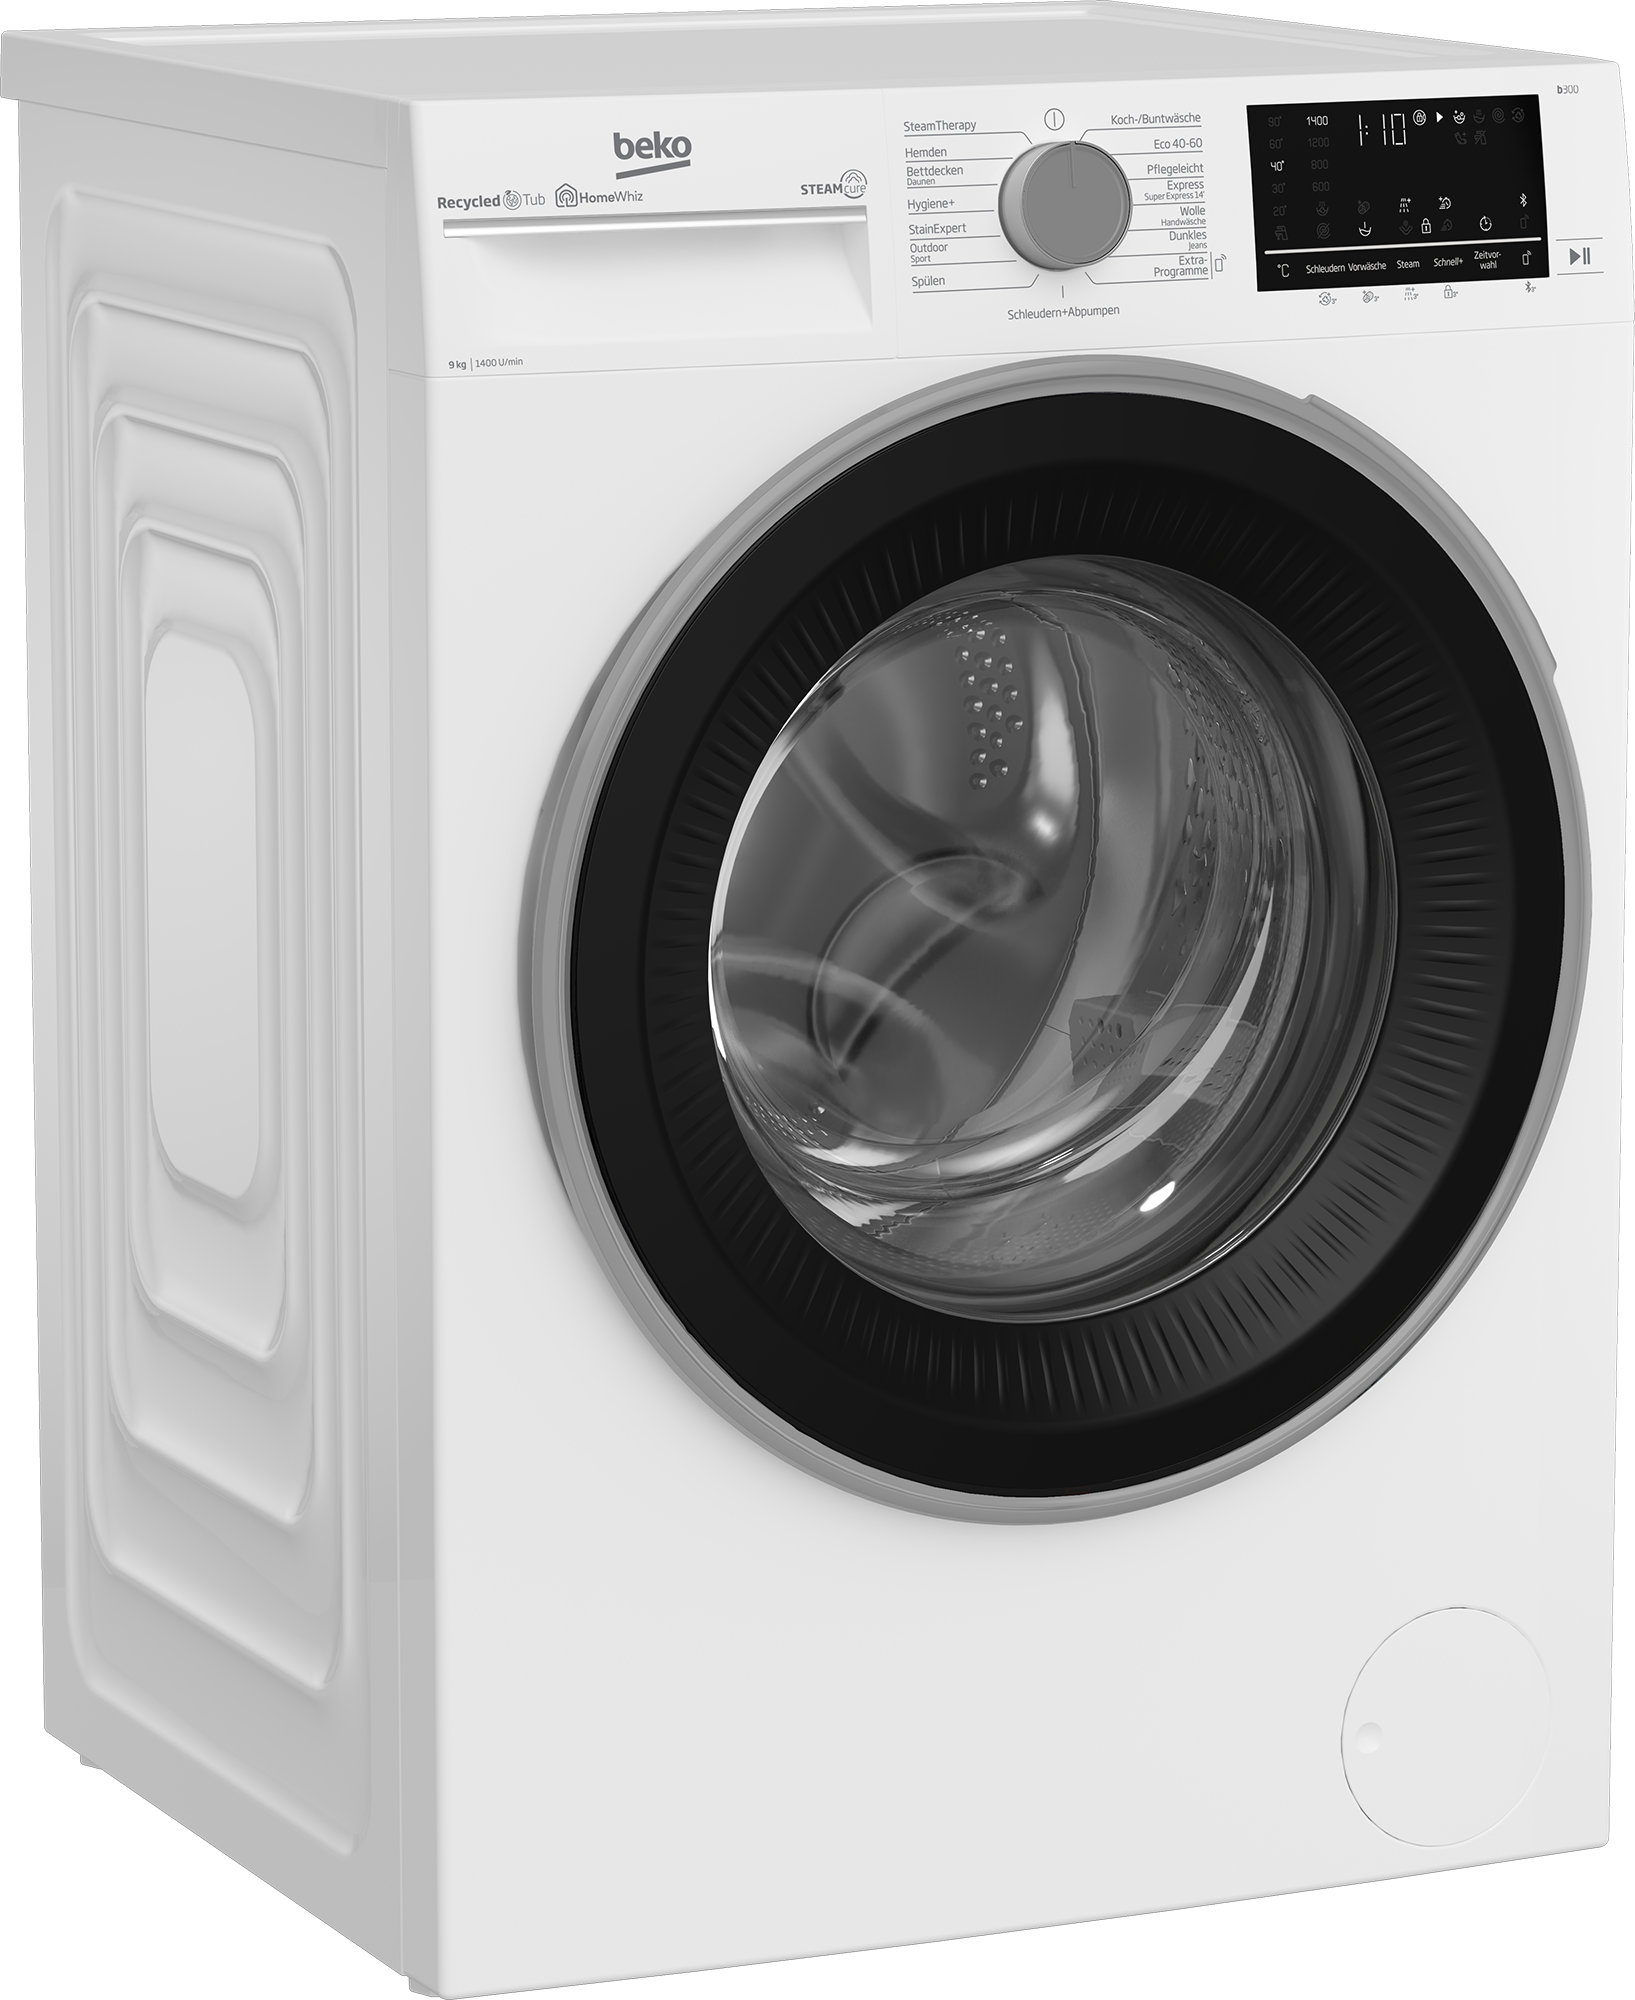 BEKO Waschmaschine, 1400 - SteamCure allergenfrei mit B3WFU58415W1, 99% Jahren 8 3 U/min, Garantie kg, b300, XXL